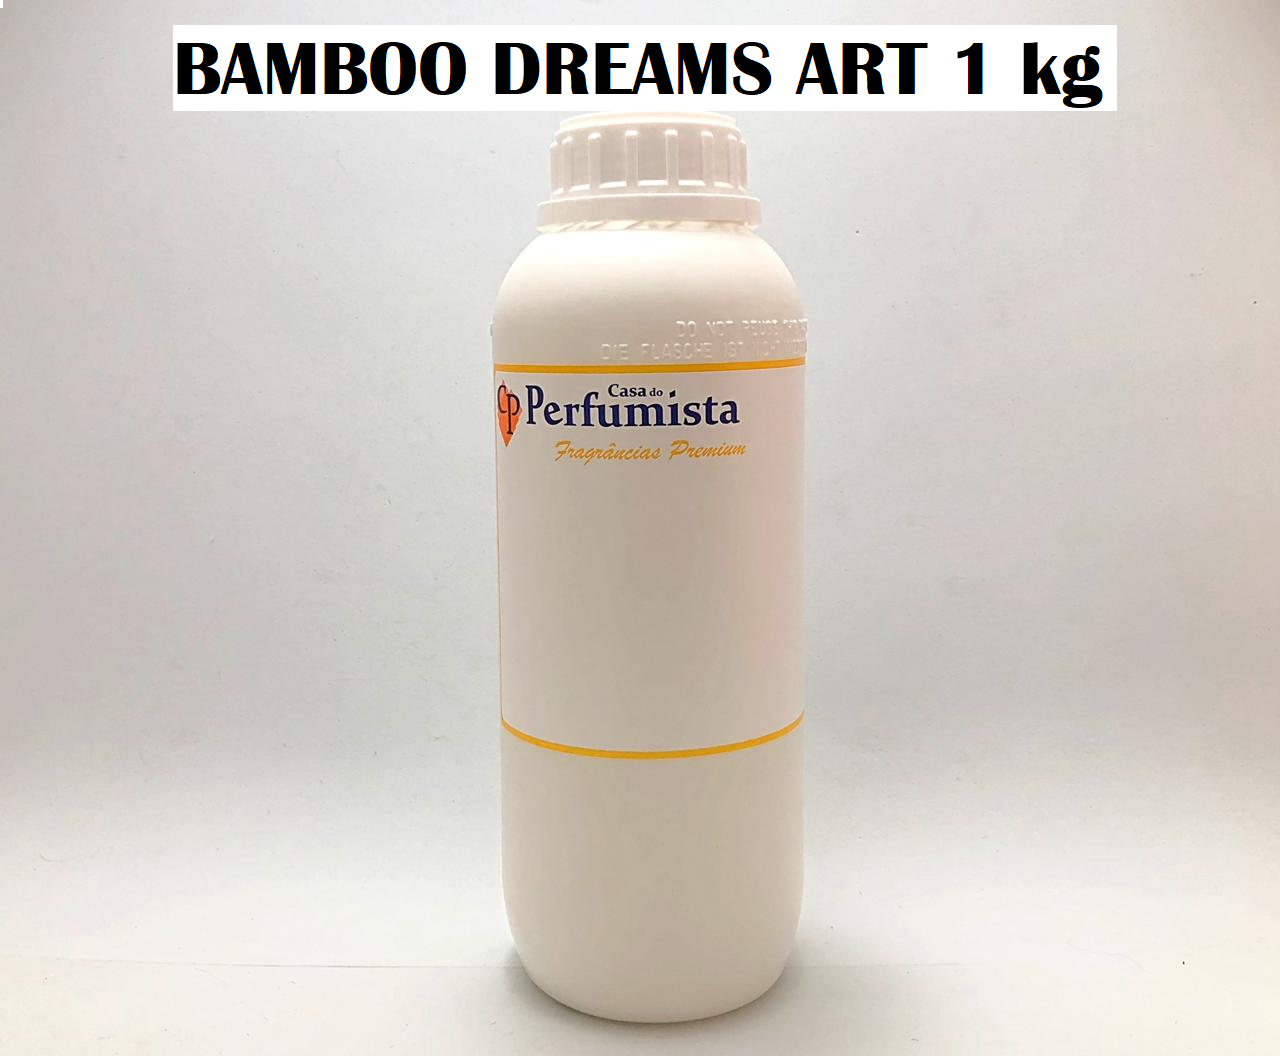 BAMBOO DREAMS ART – 1kg - Inspiração: M. Martan